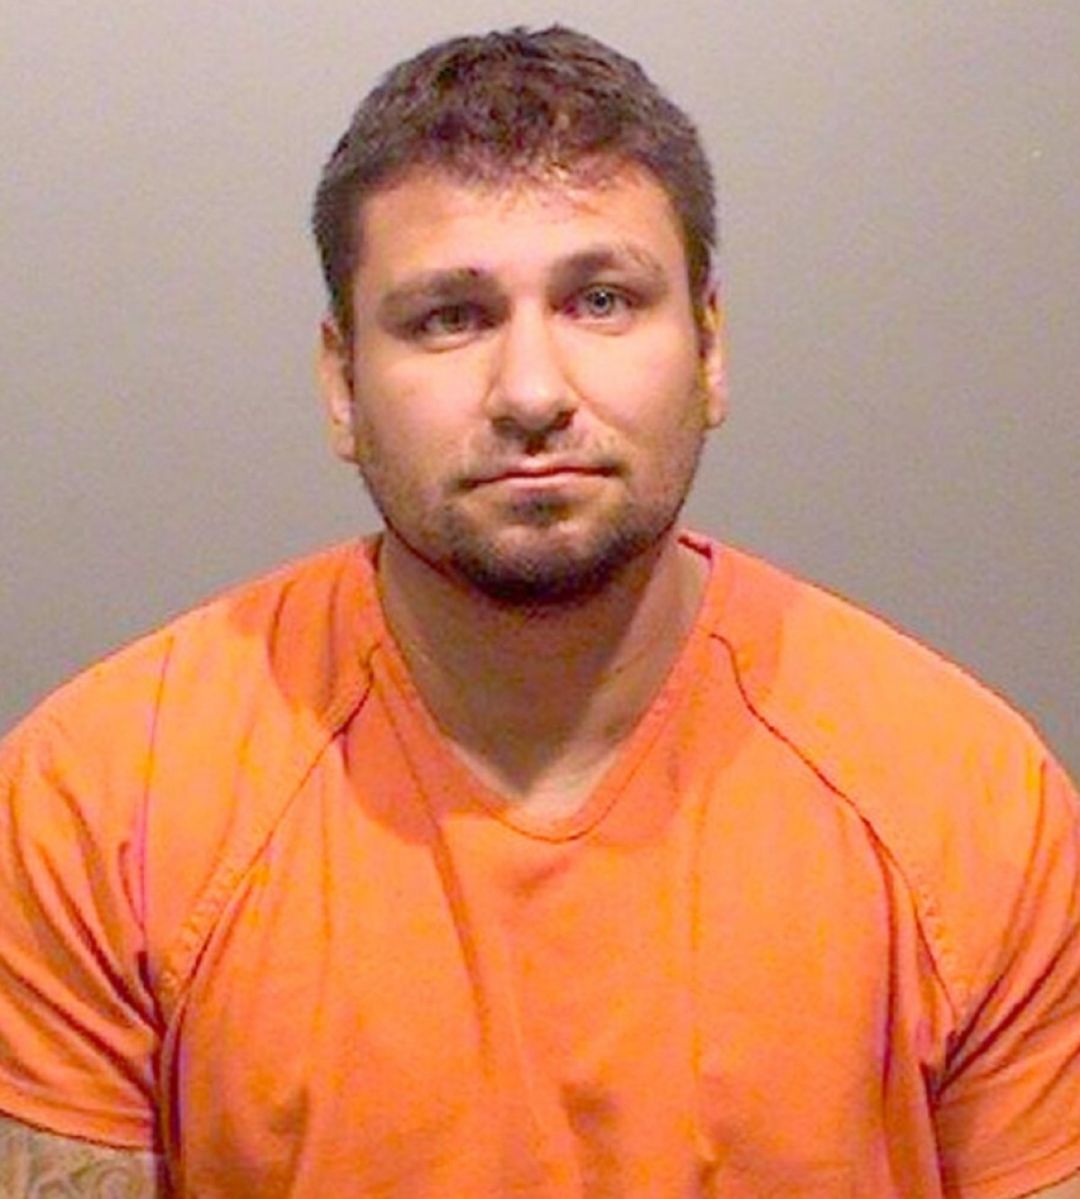 Joseph Gabriel Van Eck resultó convicto en Colorado de cargos de agresión sexual, secuestro, entre otros.